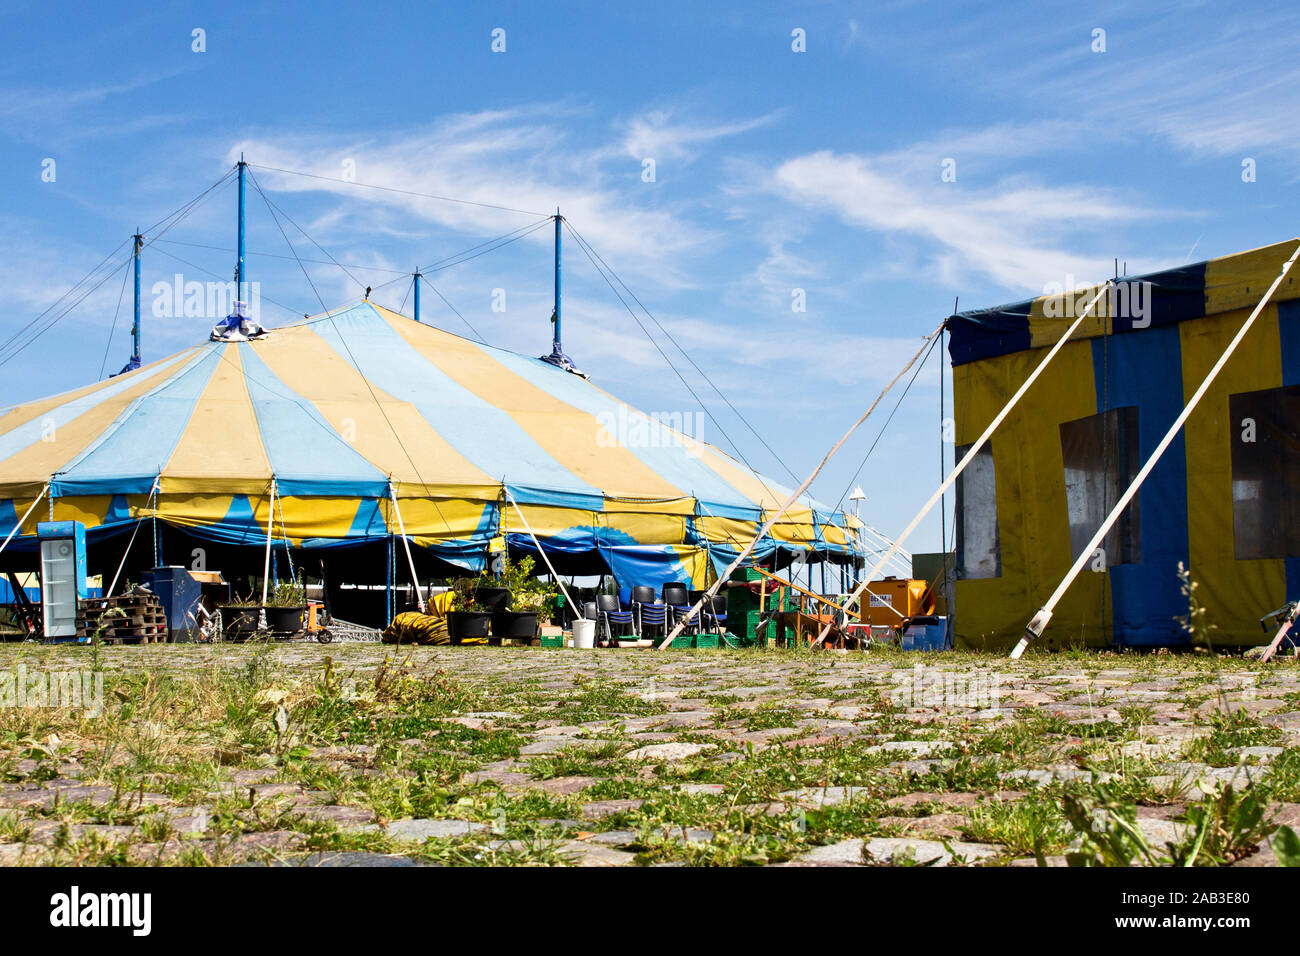 Ein Zirkuszelt während des Aufbaus auf einem öffentlichen Platz |A circus tent during the construction of a public place| Stock Photo